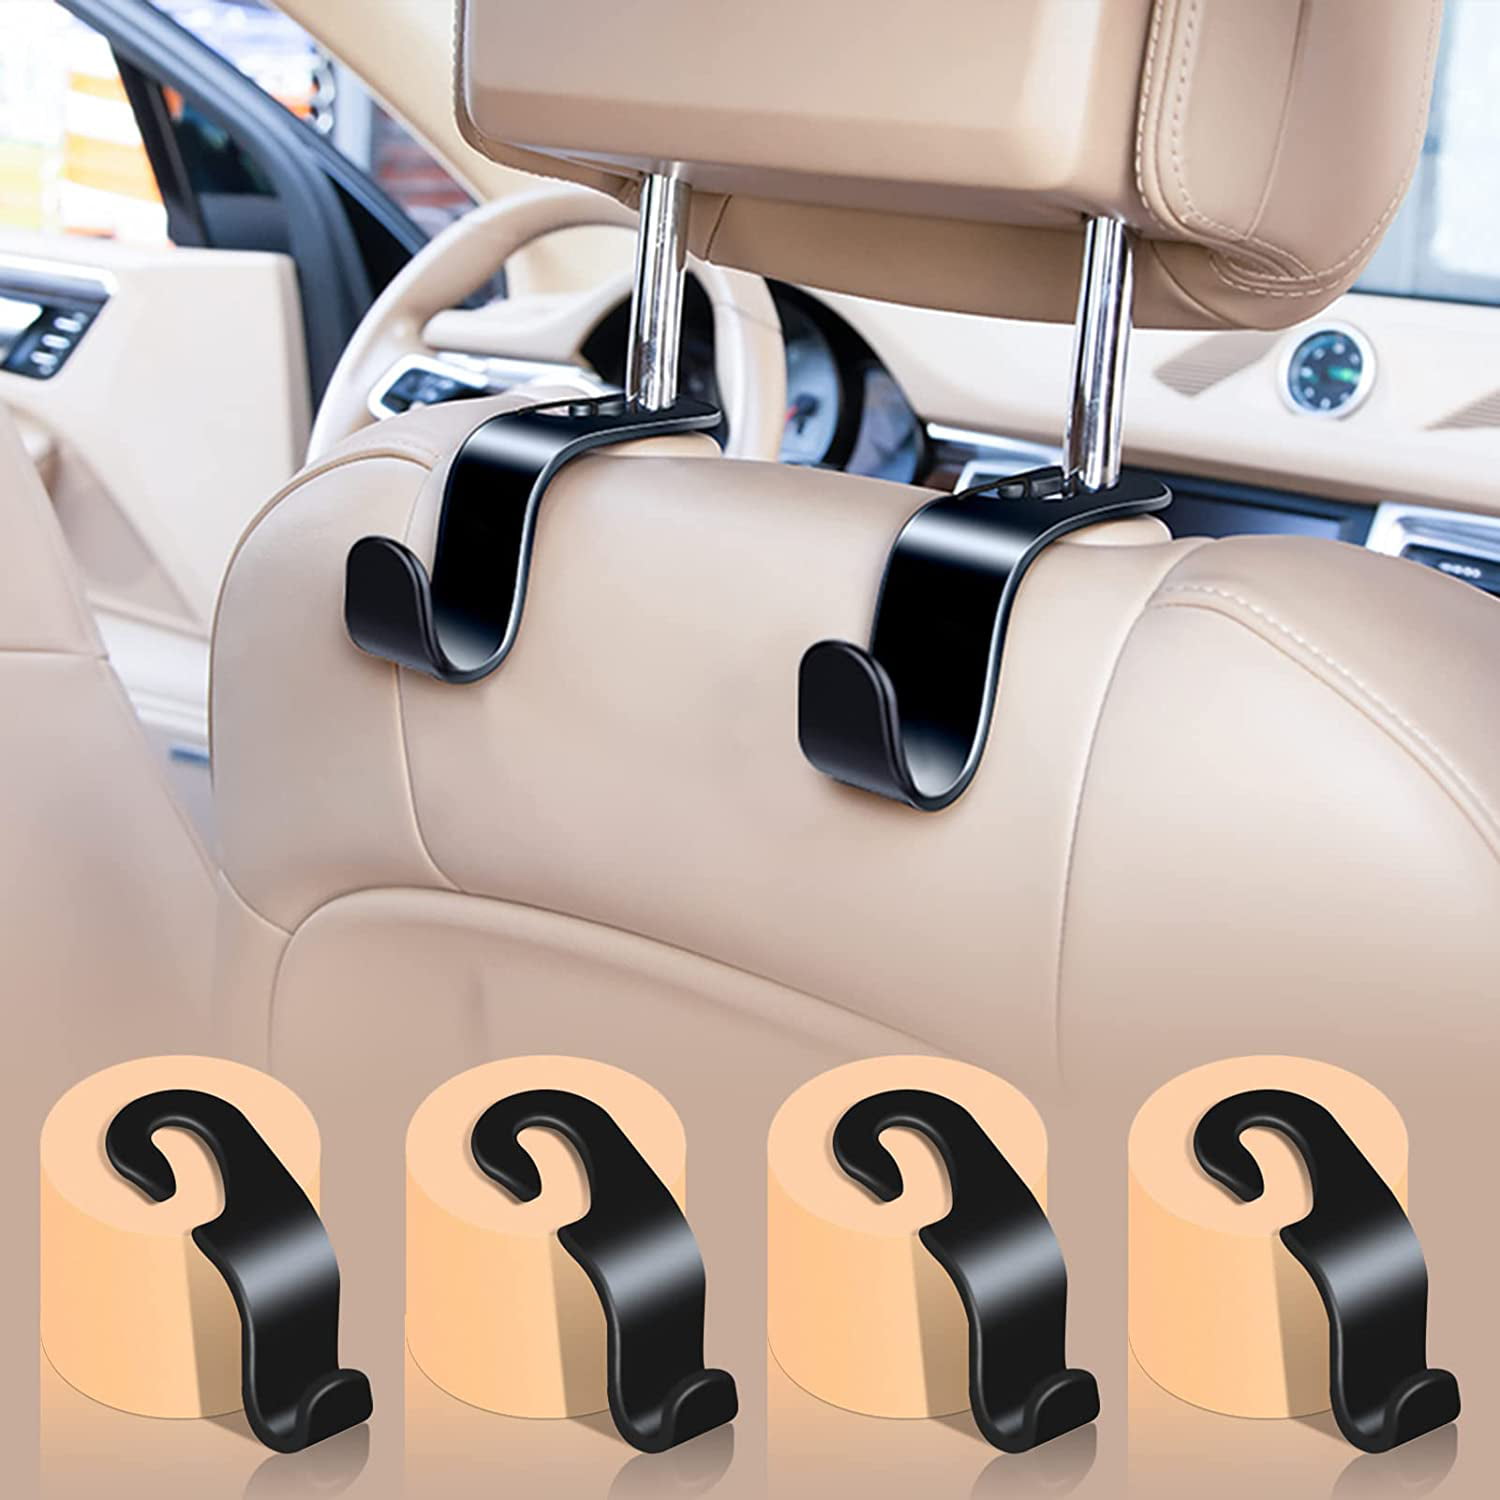 AutoExec - Other Interior Auto Accessories - Interior Car